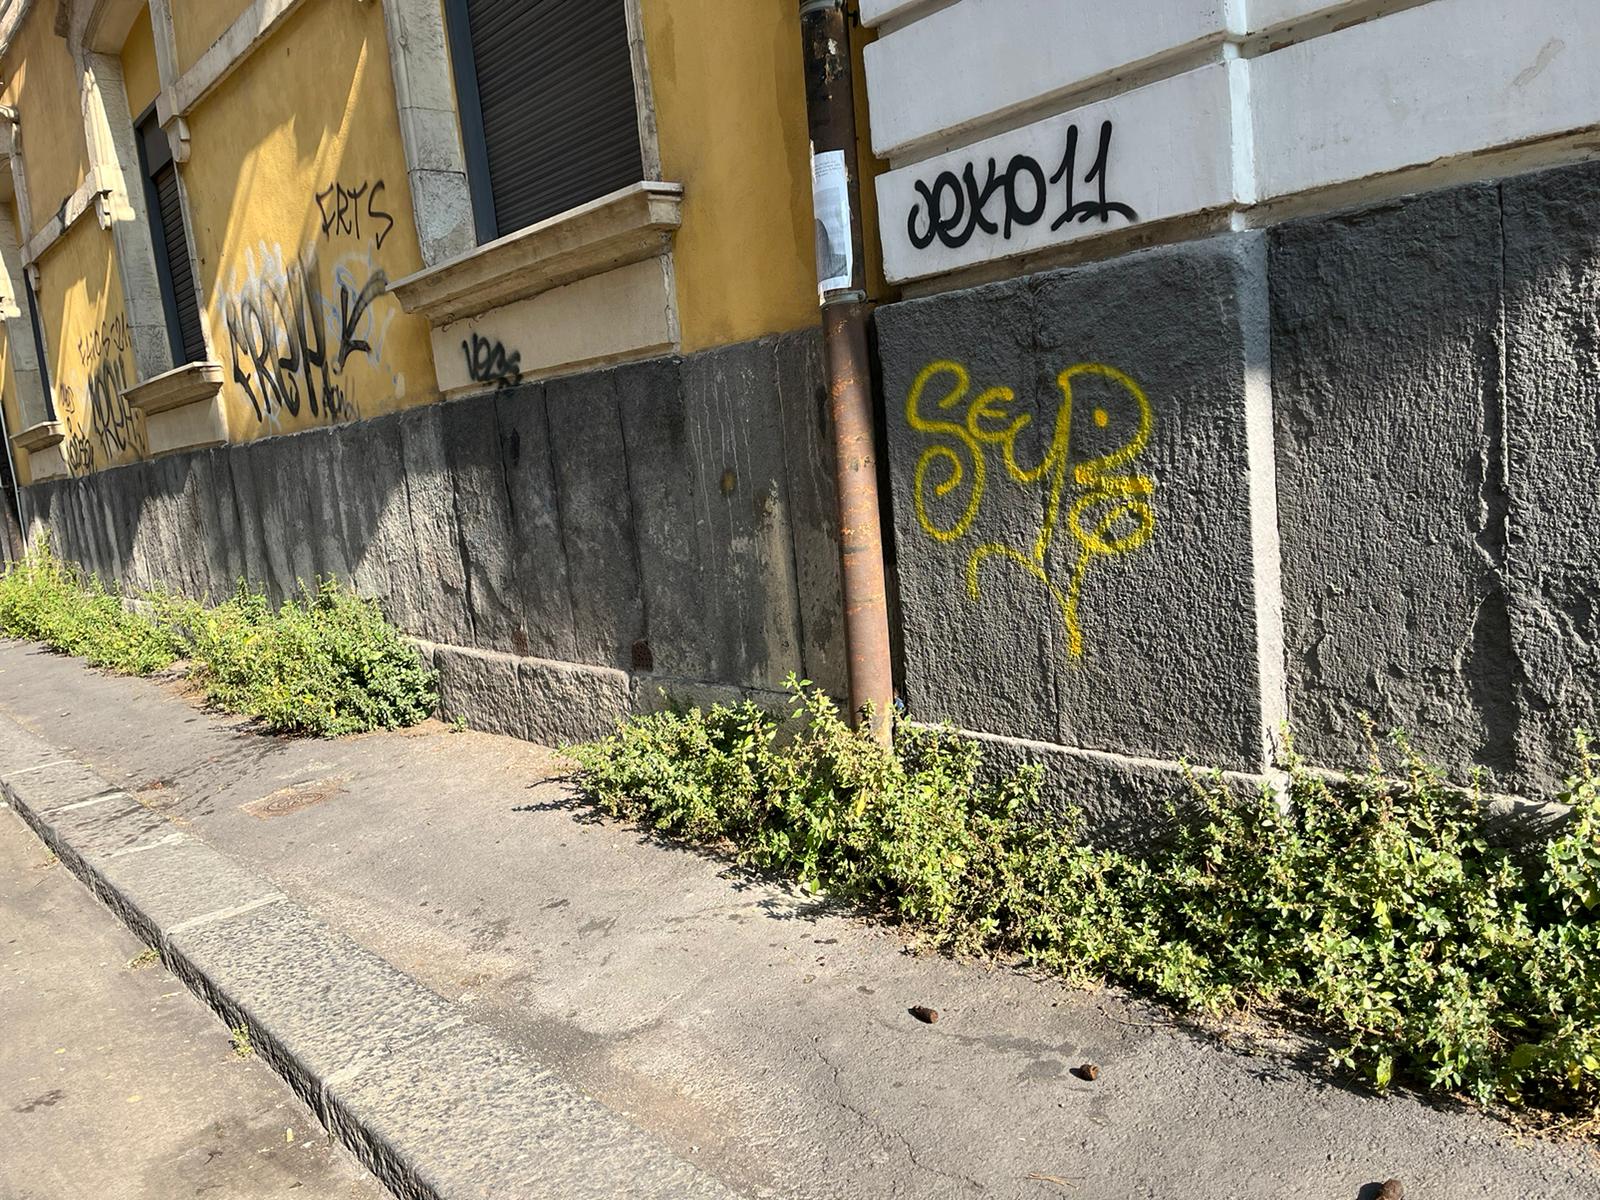 Marciapiedi invasi da erbacce e cespugli nel quartiere “Borgo-Sanzio”, l’appello del Comitato Vulcania